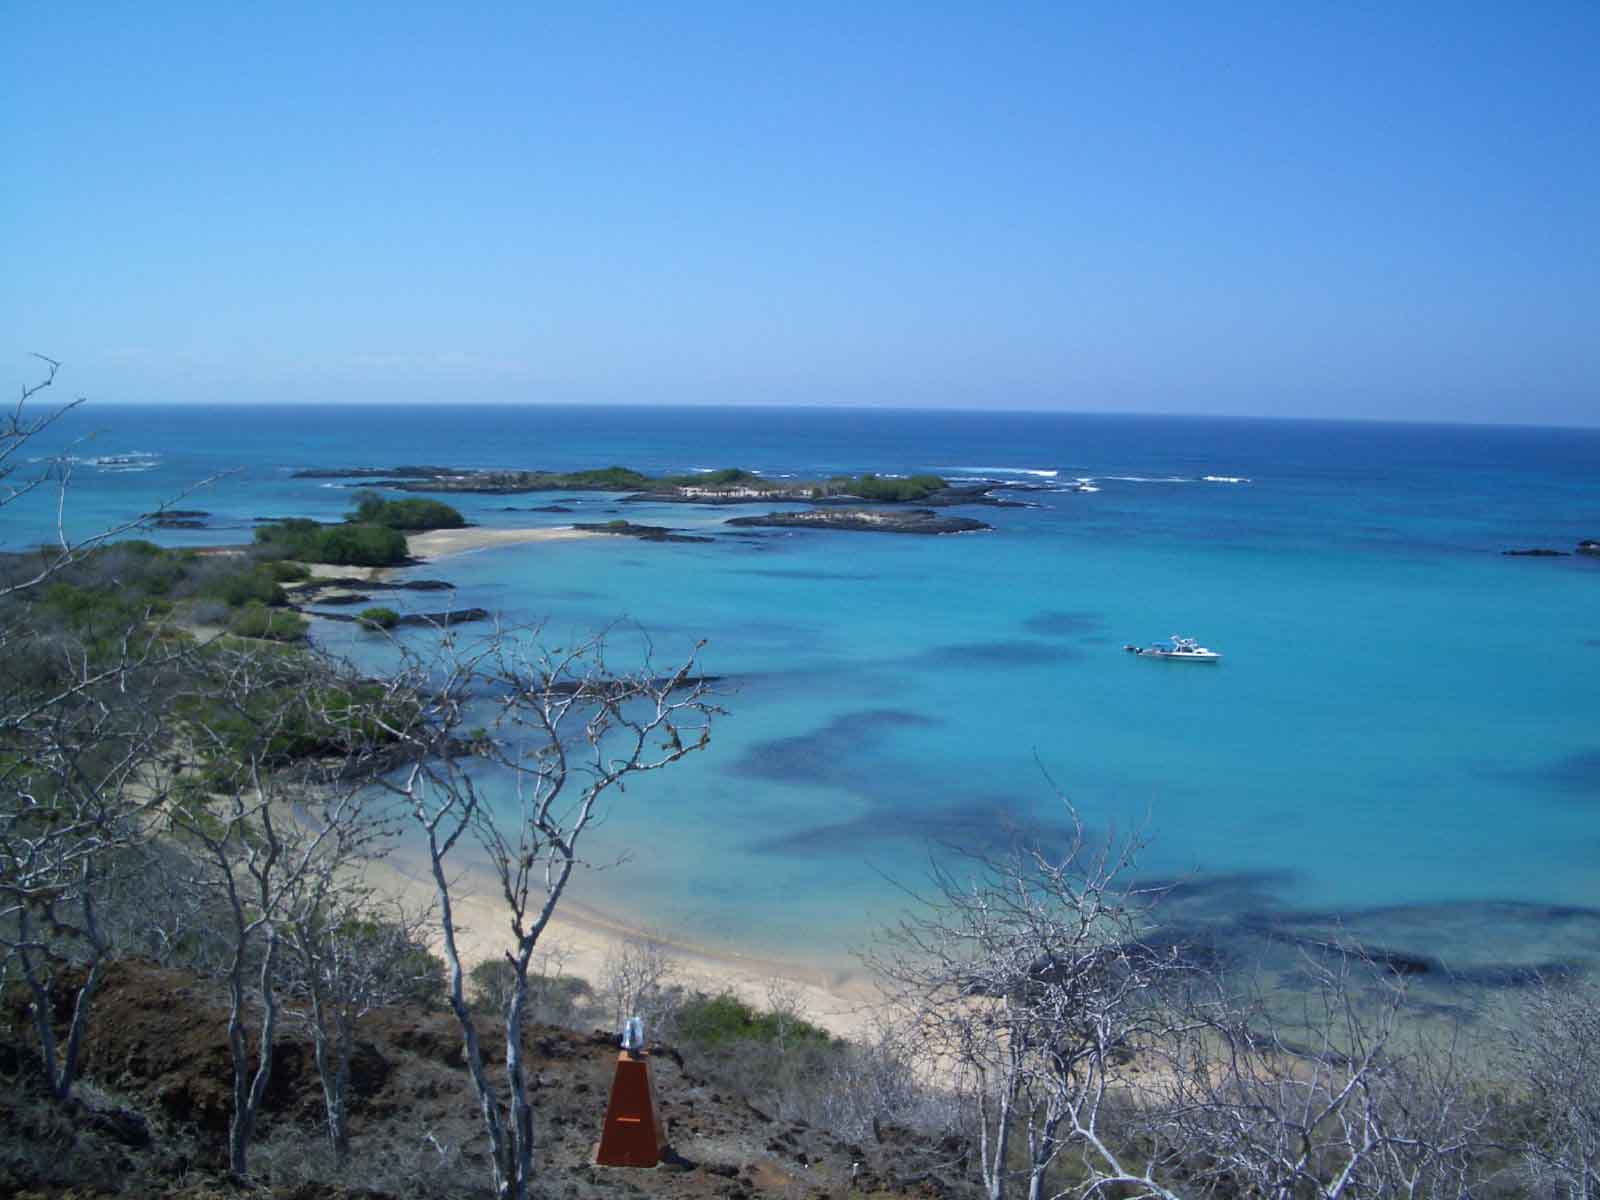 Mirador de la Baronesa | Galapagos Islands